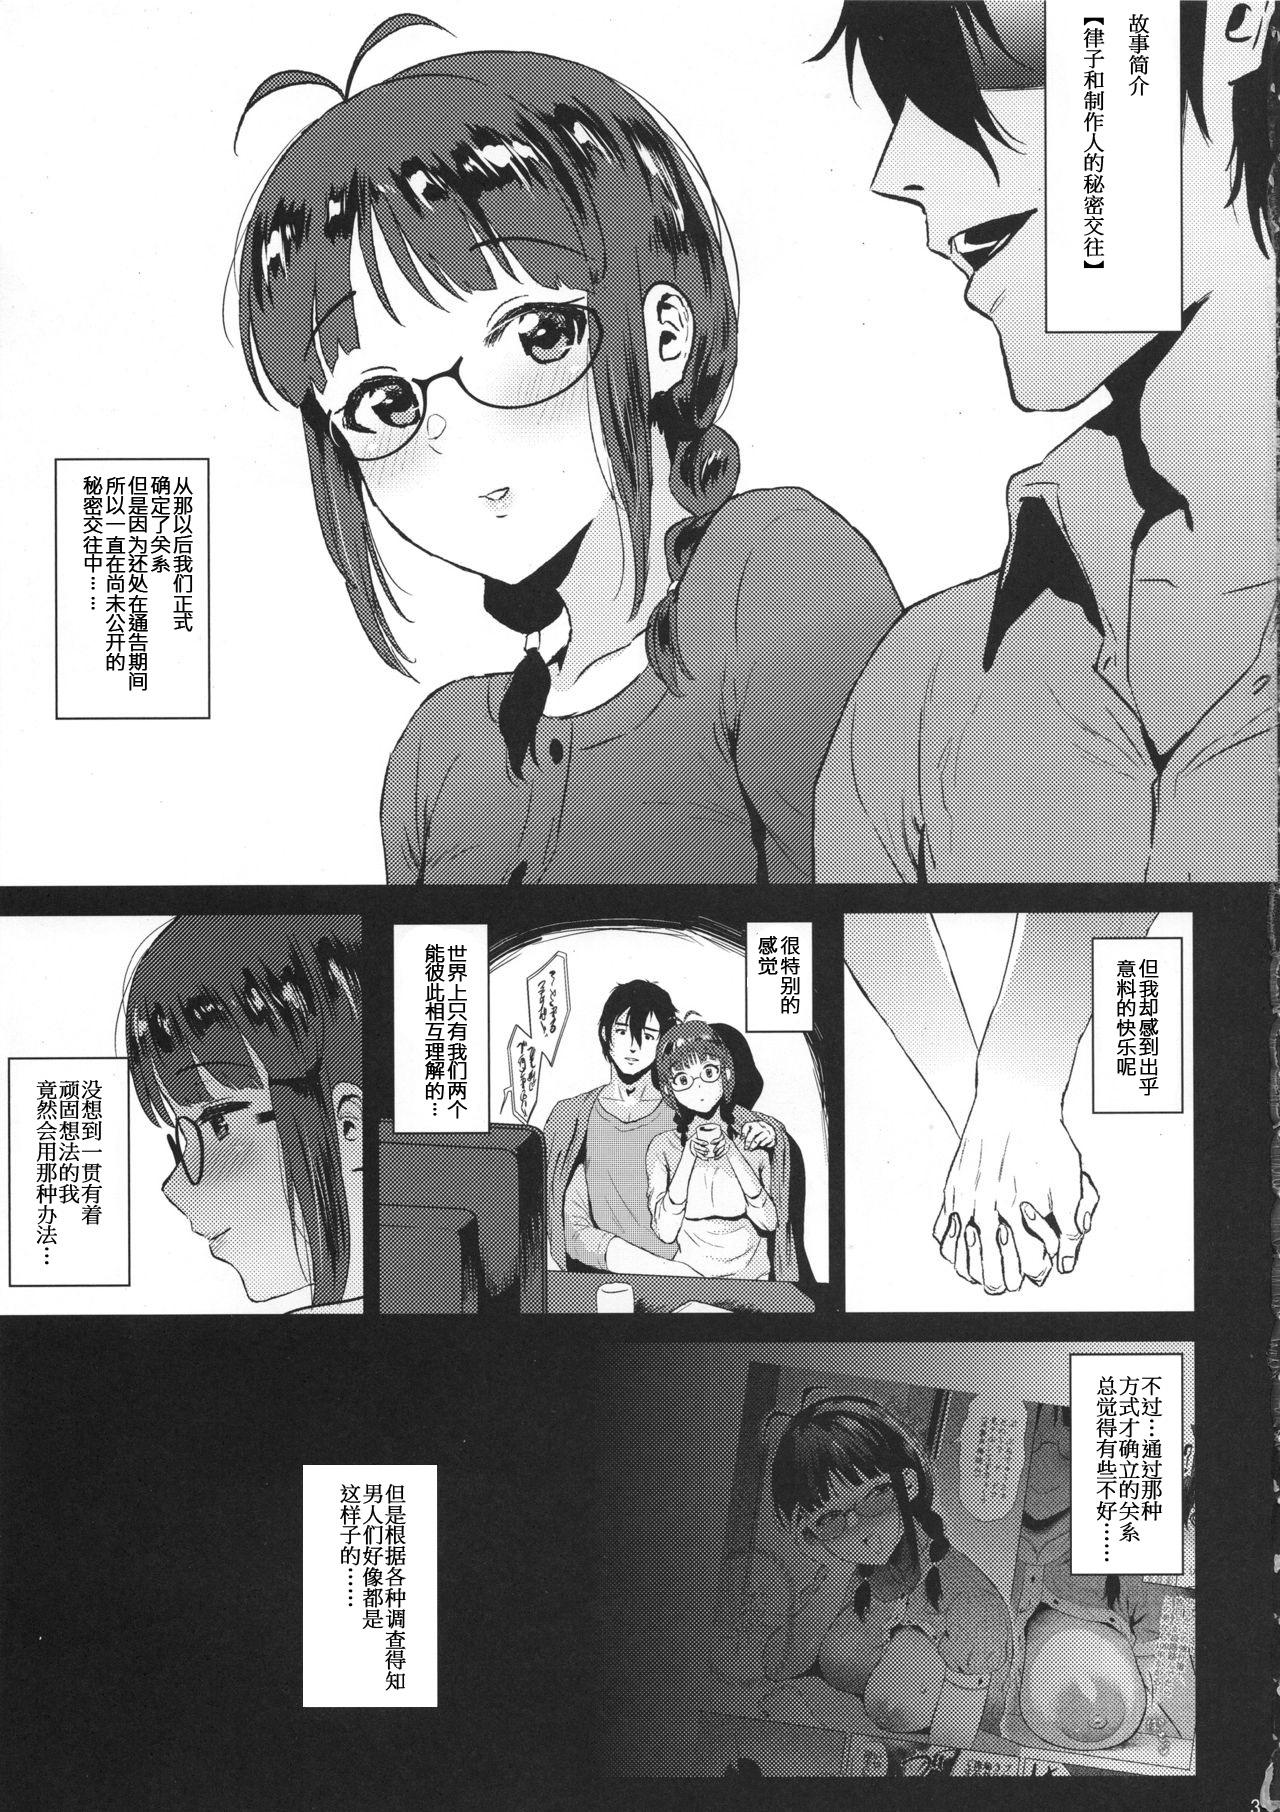 3some Ritsuko wa Kozukuri ga Shitai after - The idolmaster Youporn - Page 2